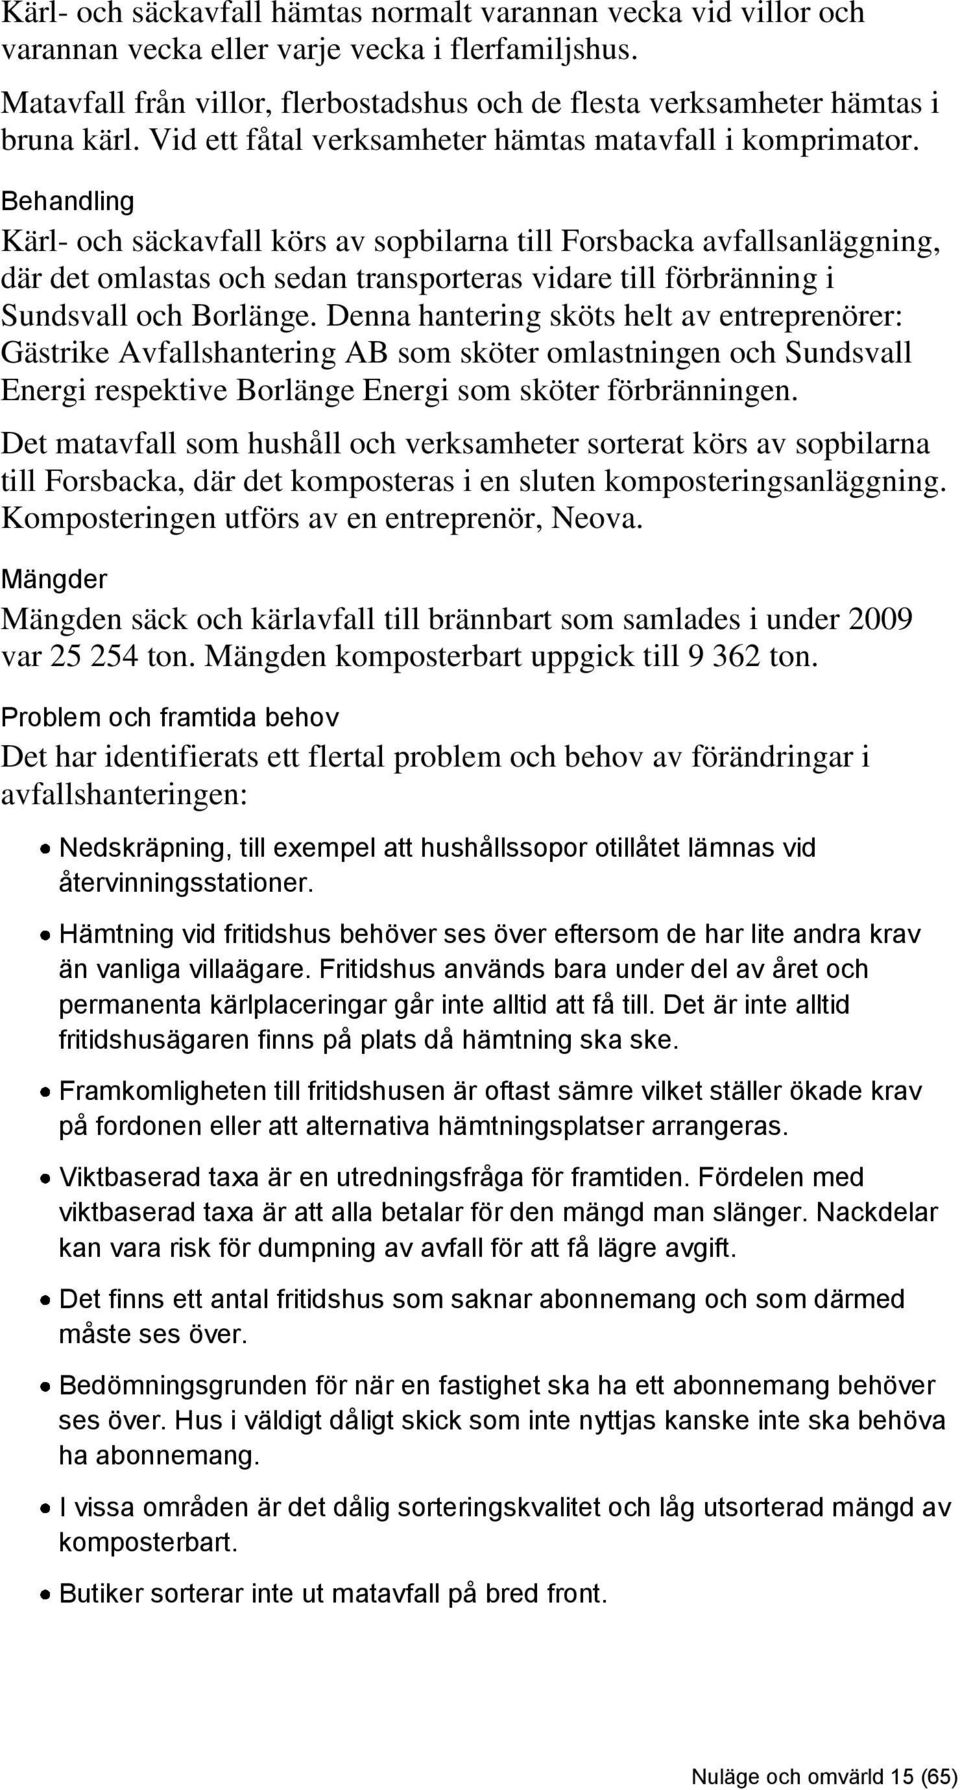 Behandling Kärl- och säckavfall körs av sopbilarna till Forsbacka avfallsanläggning, där det omlastas och sedan transporteras vidare till förbränning i Sundsvall och Borlänge.